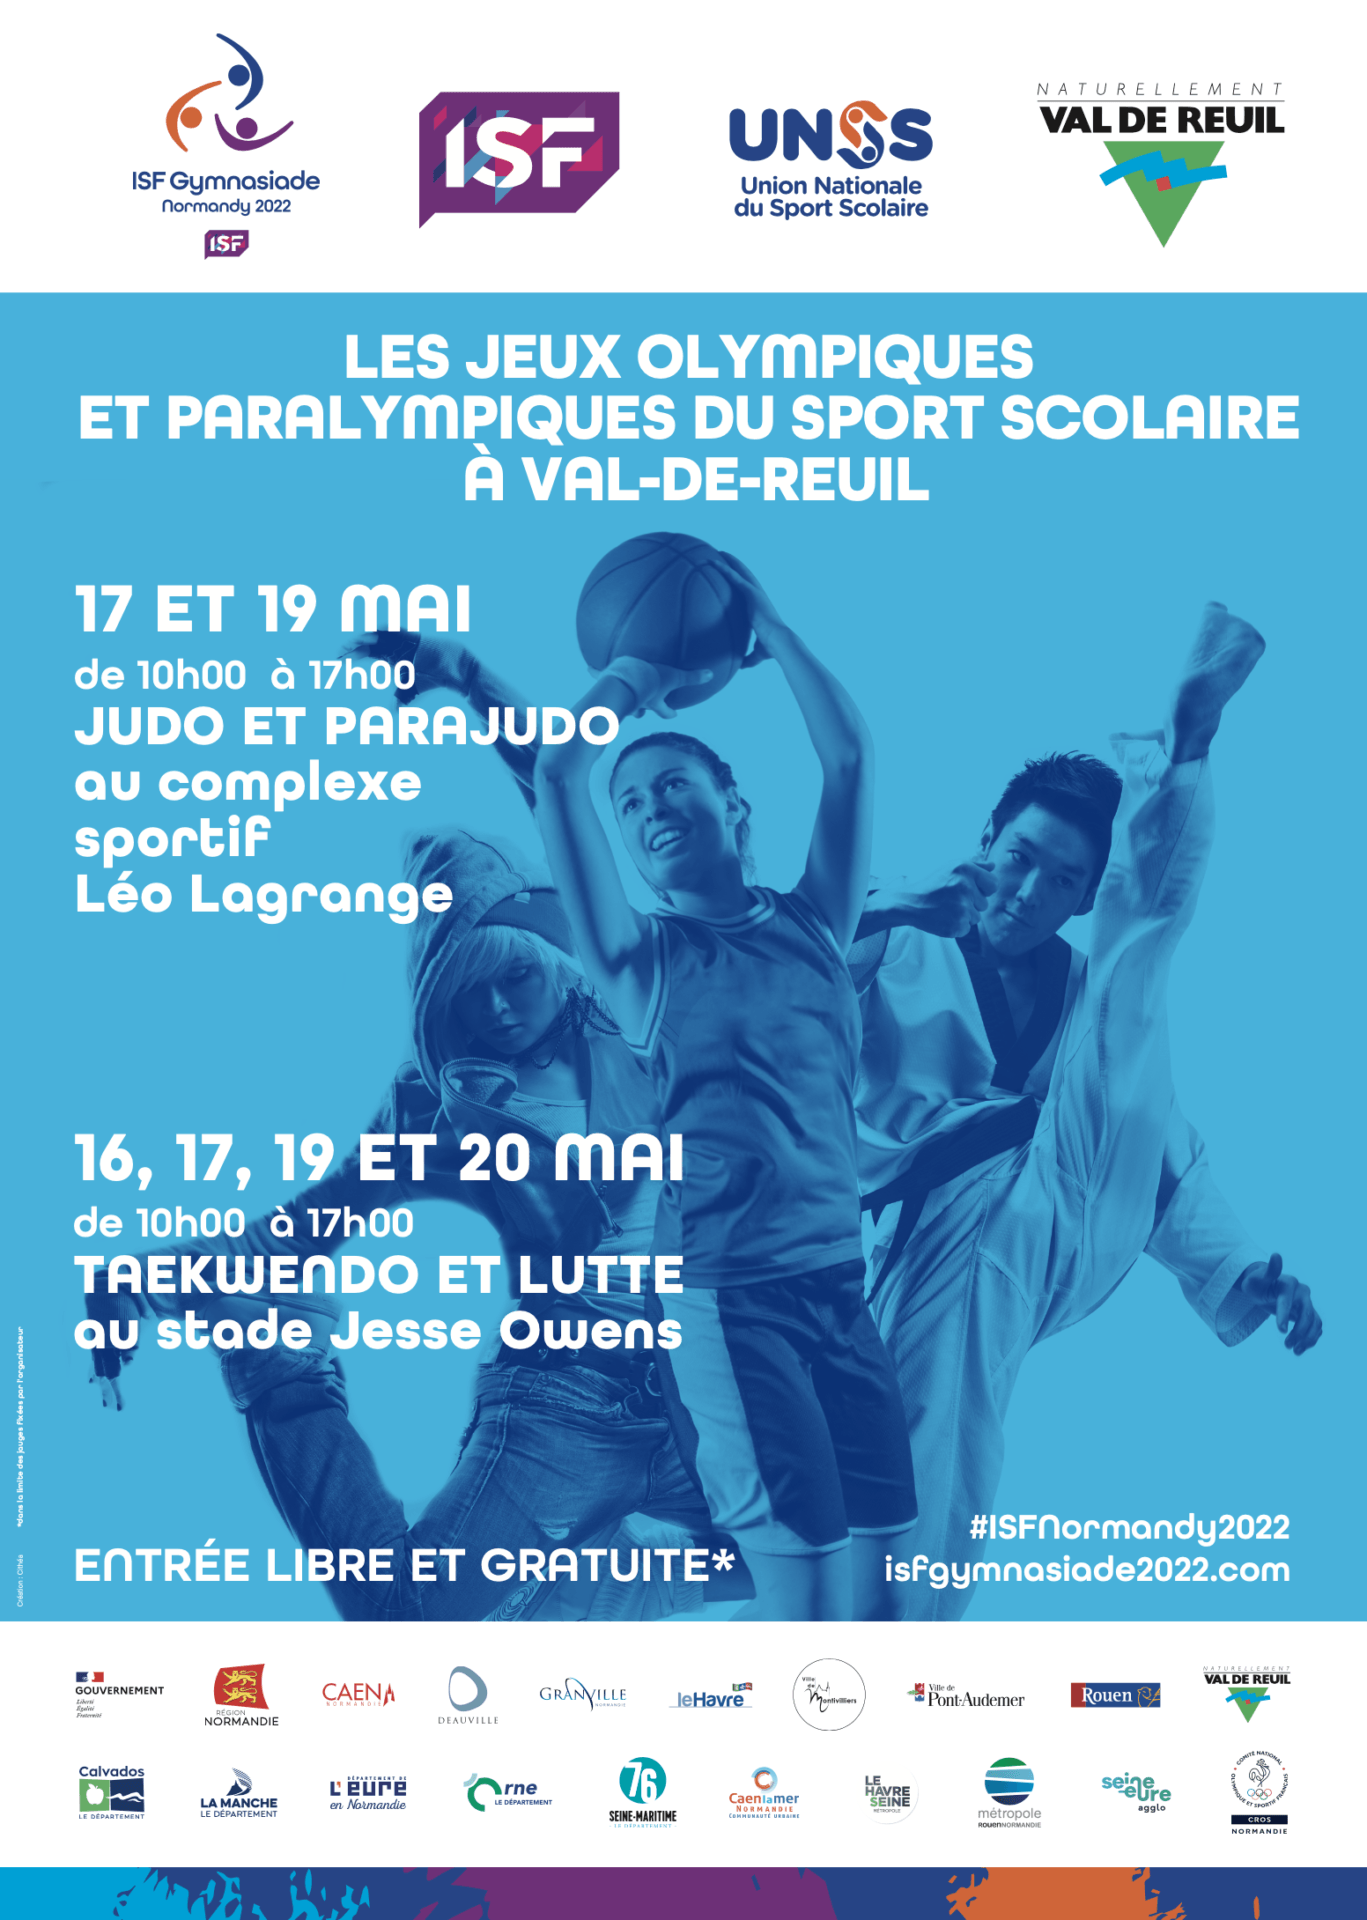 Les Jeux Olympiques et Paralympiques du sport scolaire à Val-de-Reuil